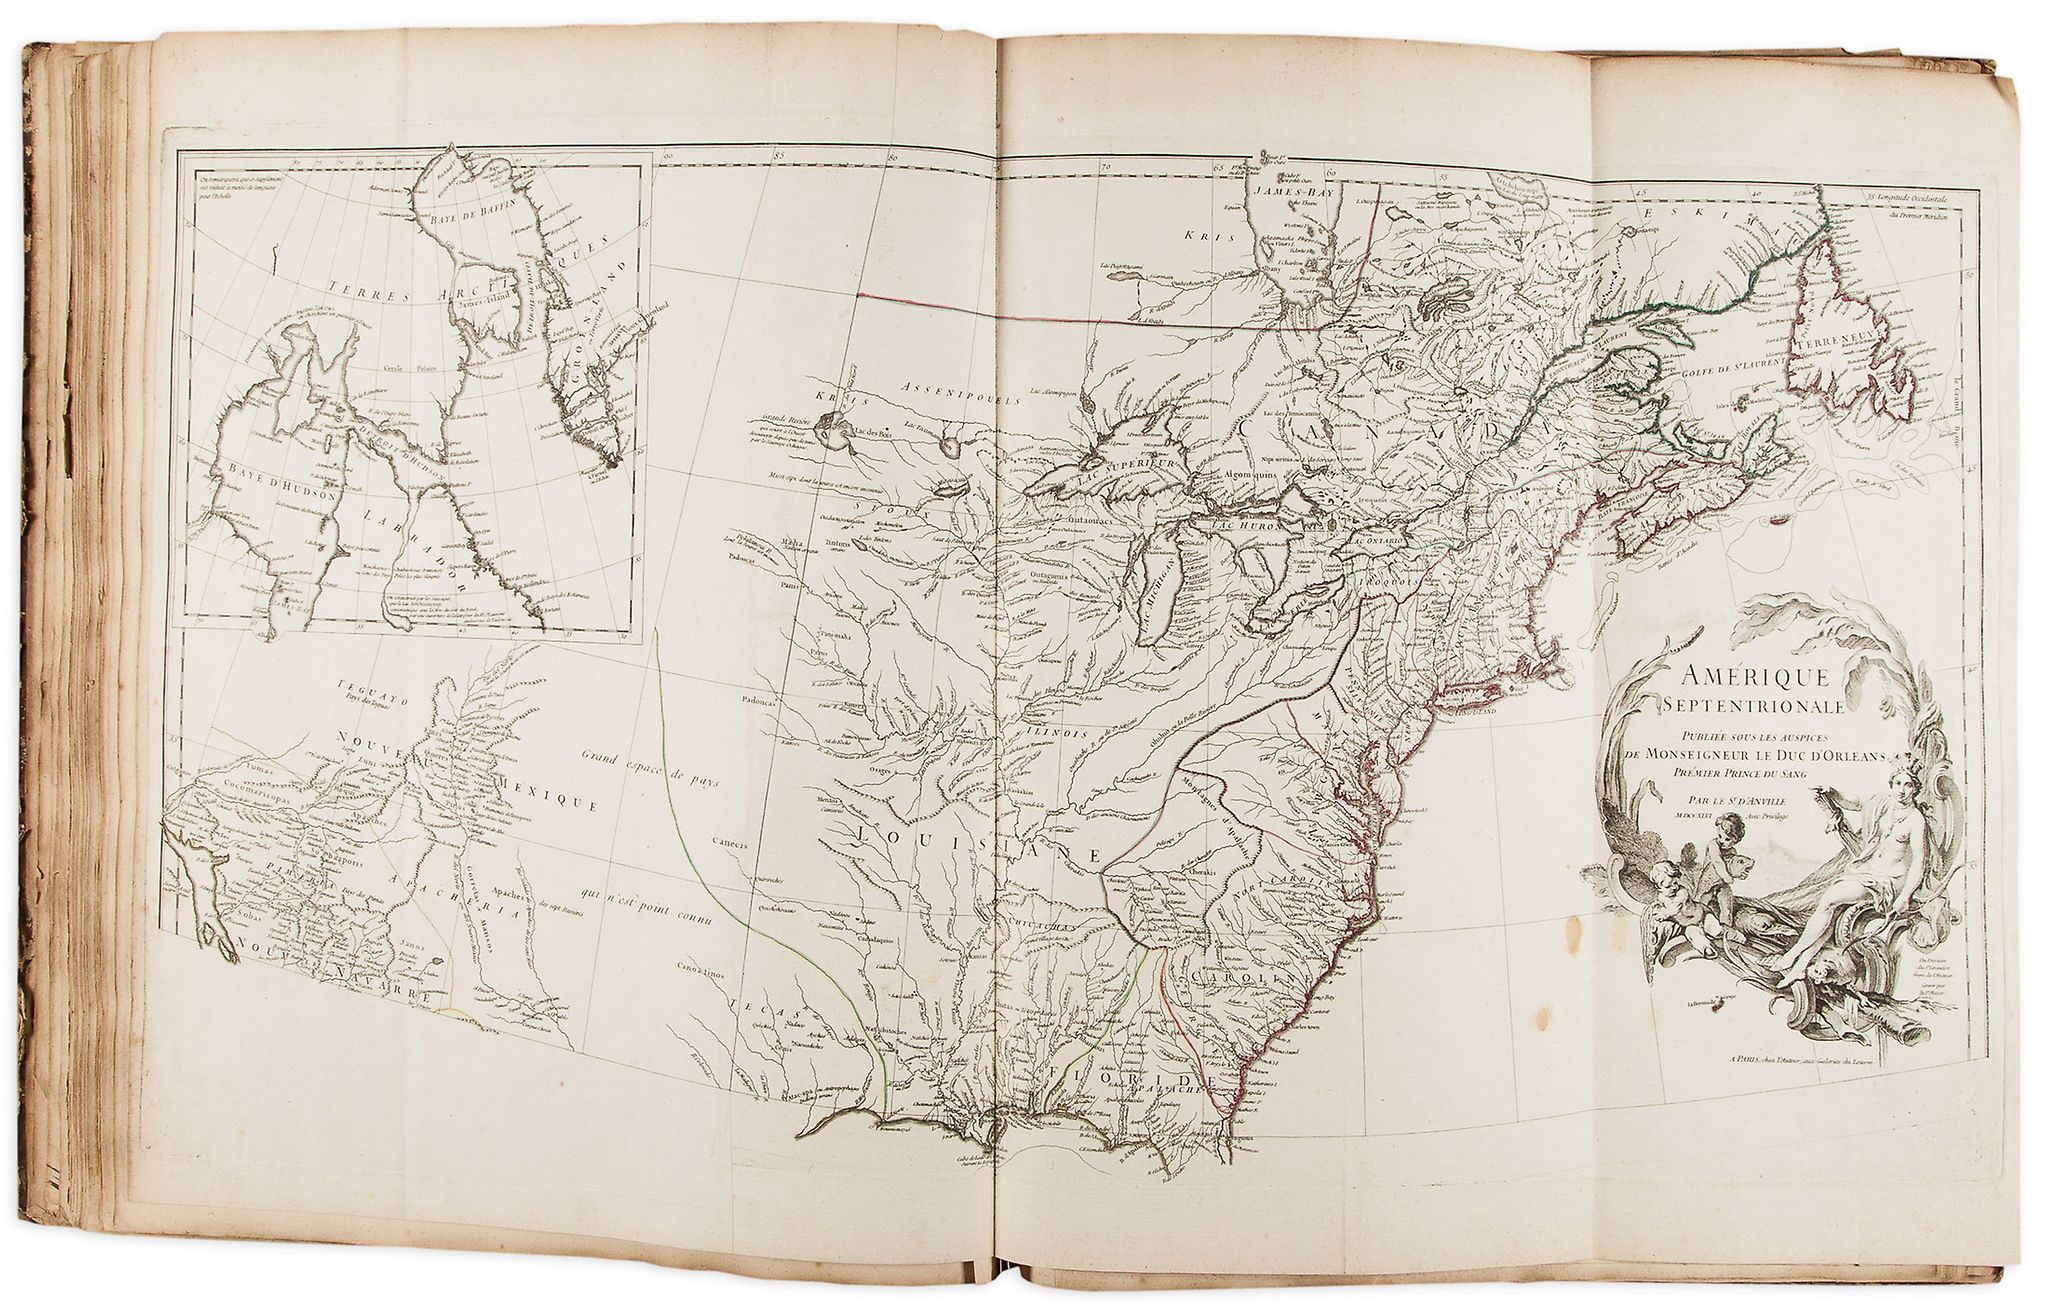 Atlas.- D'Anville (J.B.B.) - [Composite Atlas],  manuscript contents leaf headed 'Table de l'Atlas